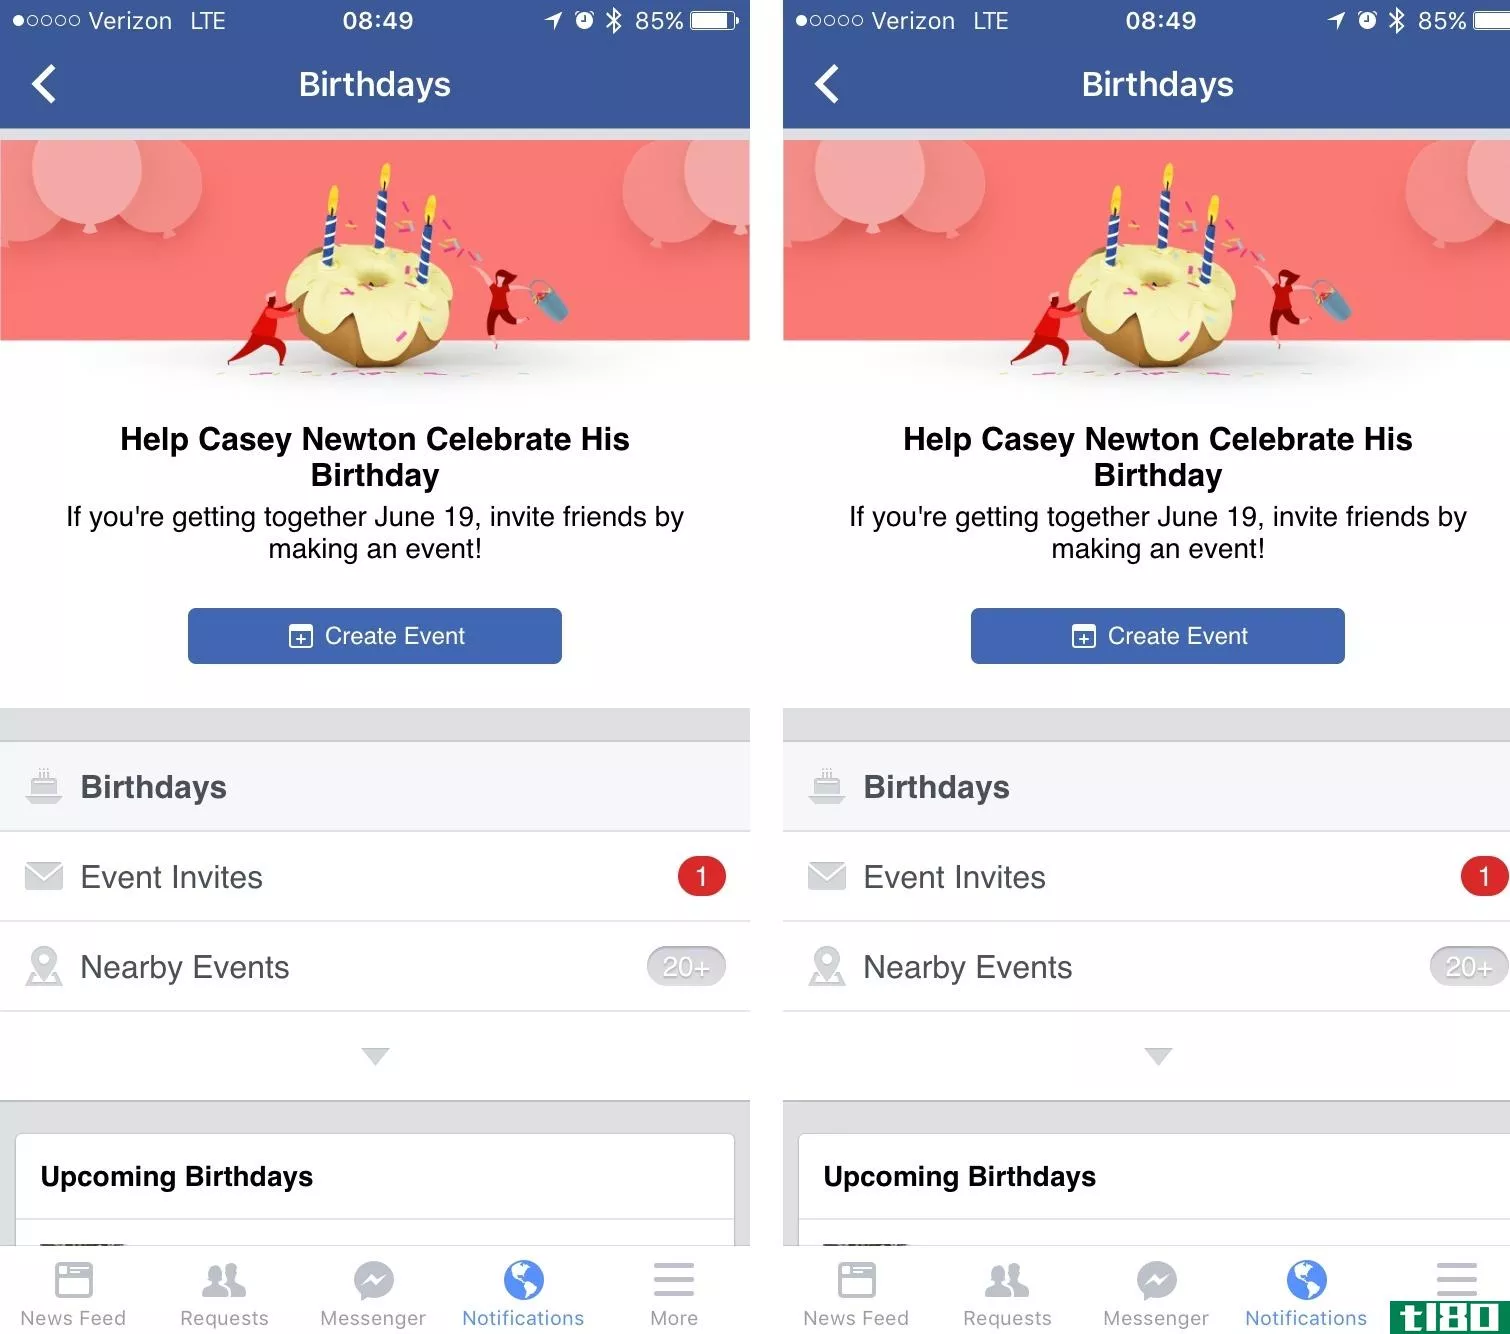 facebook计划了我的生日派对，我无法决定对此有何感想